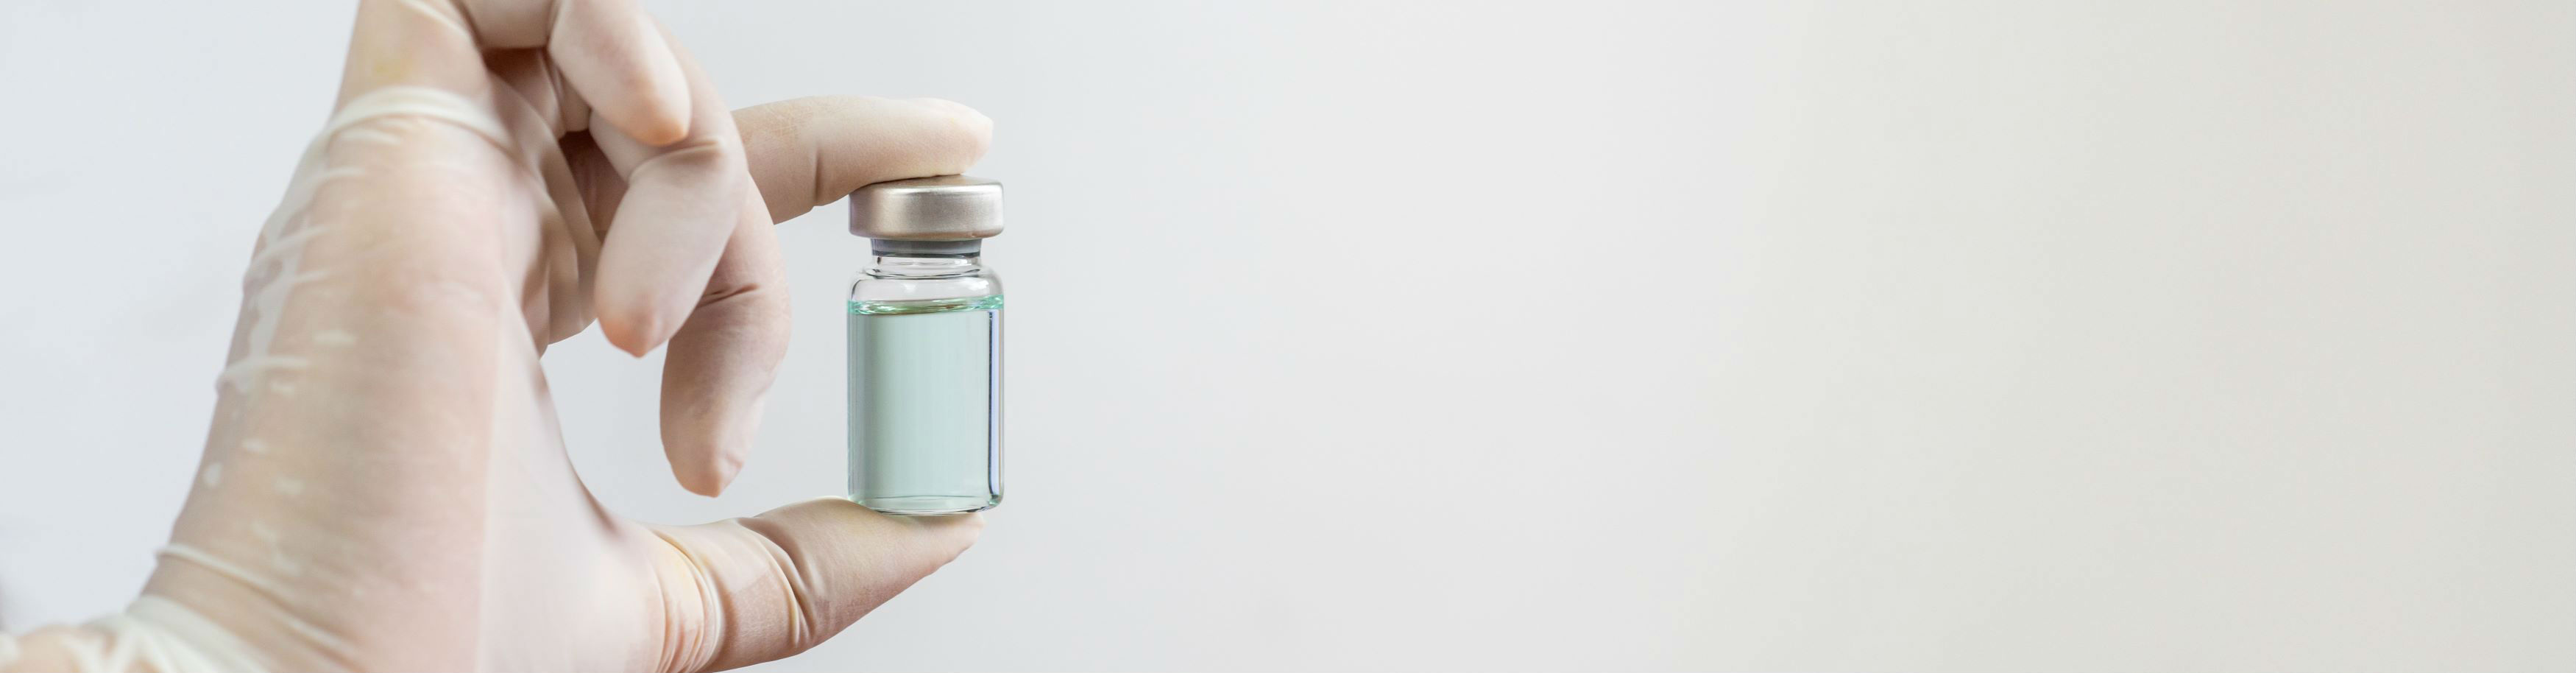 Vaccine Vial being held